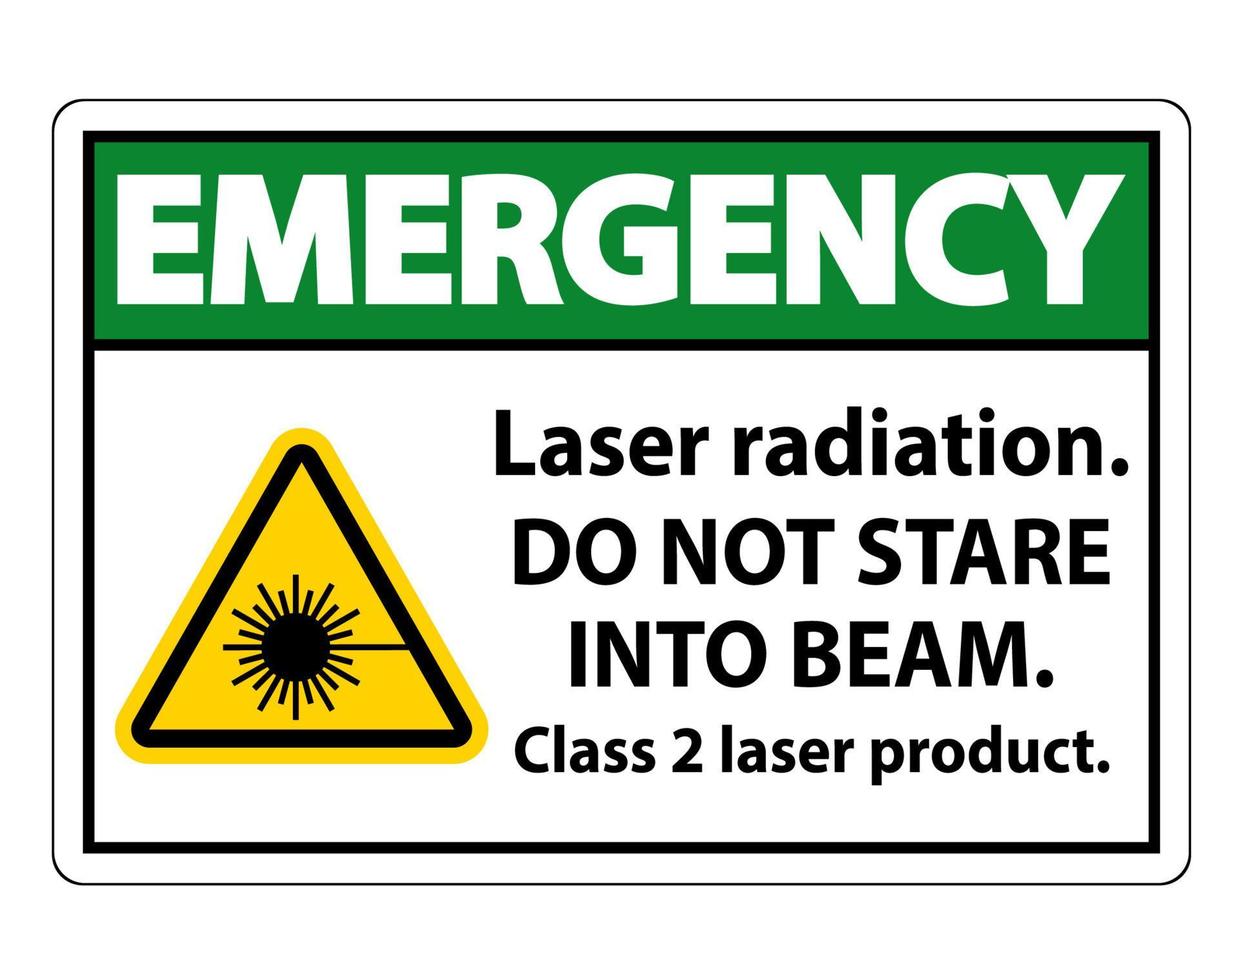 akut laserstrålning, stirra inte in i strålen, klass 2 laserproduktskylt på vit bakgrund vektor